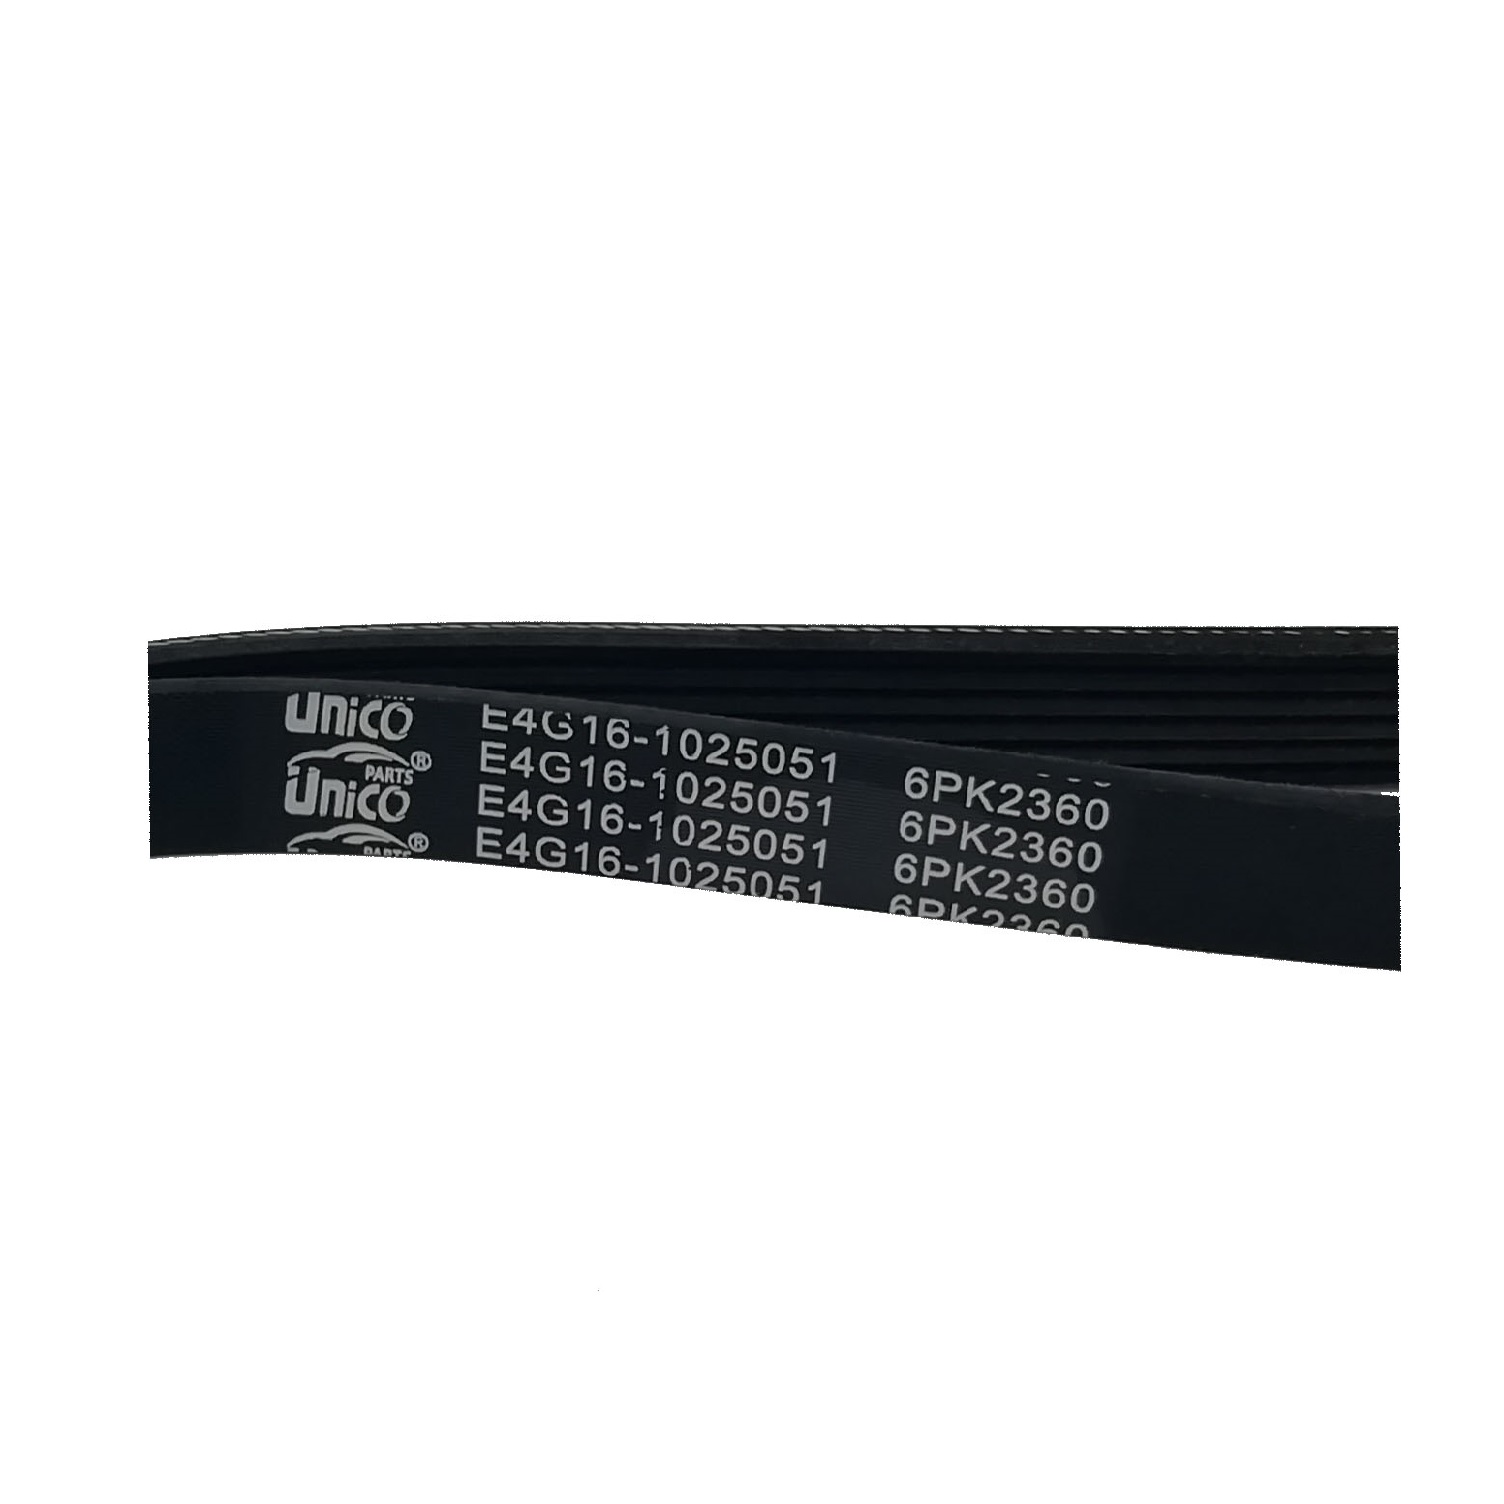 تسمه دینام یونیکو مدل E4G16-1025051 مناسب برای آریزو5 دنده ای